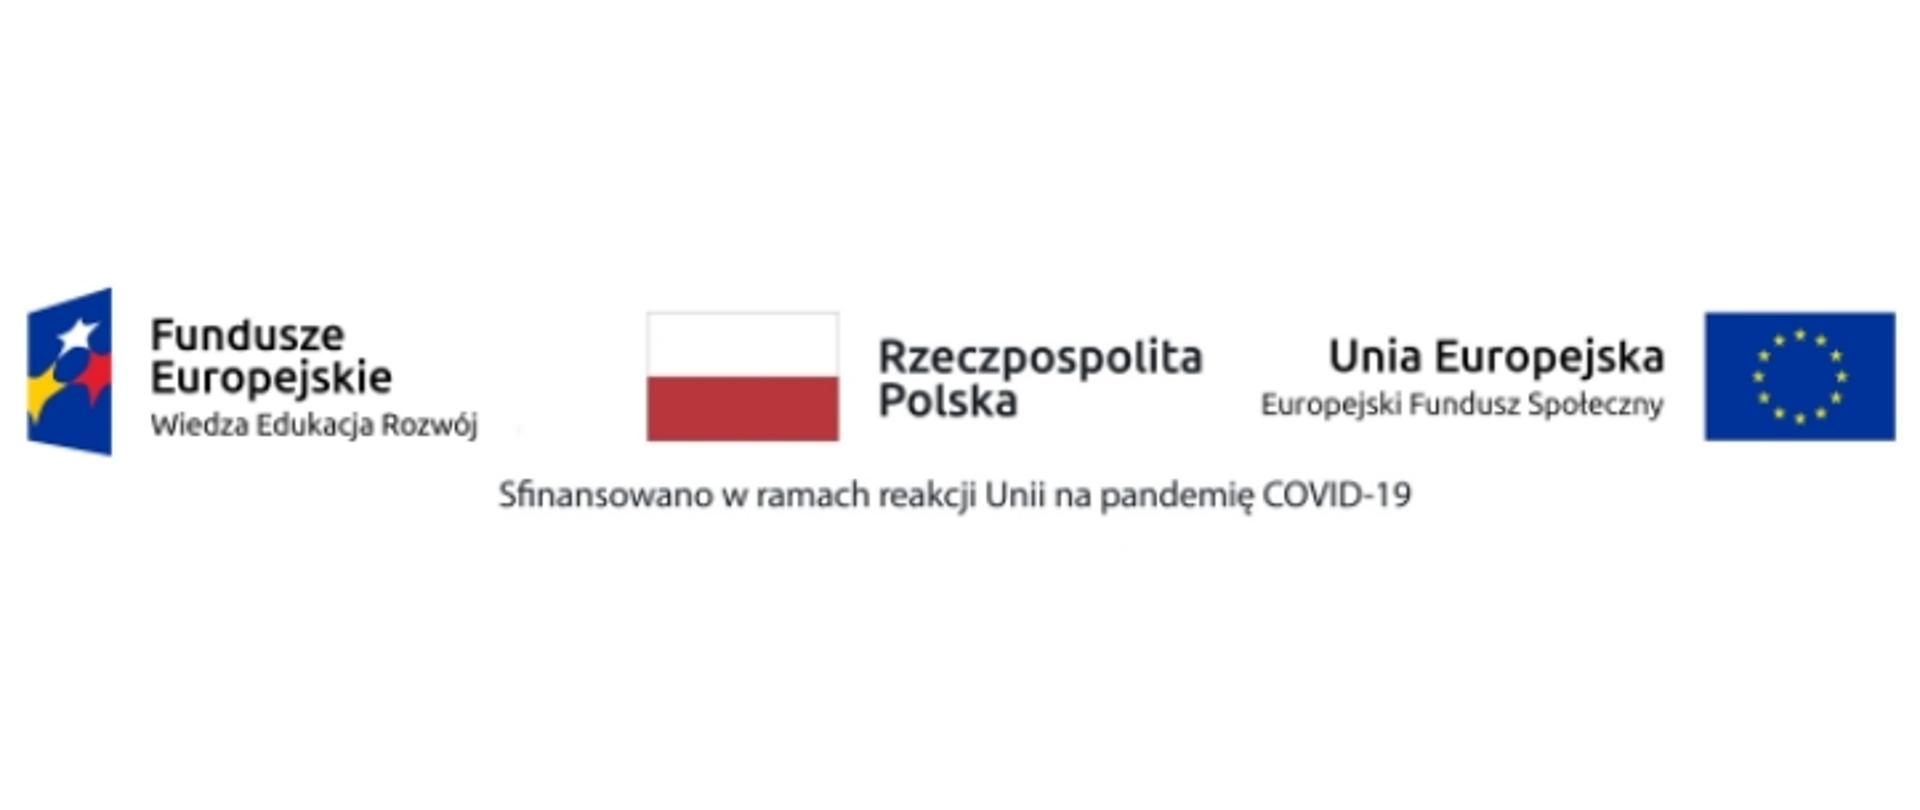 Logotypy: Fundusze Europejskie, Rzeczpospolita Polska i Unia Europejska. Na dole widnieje napis: Sfinansowano w ramach reakcji Unii na pandemię COVID-19.